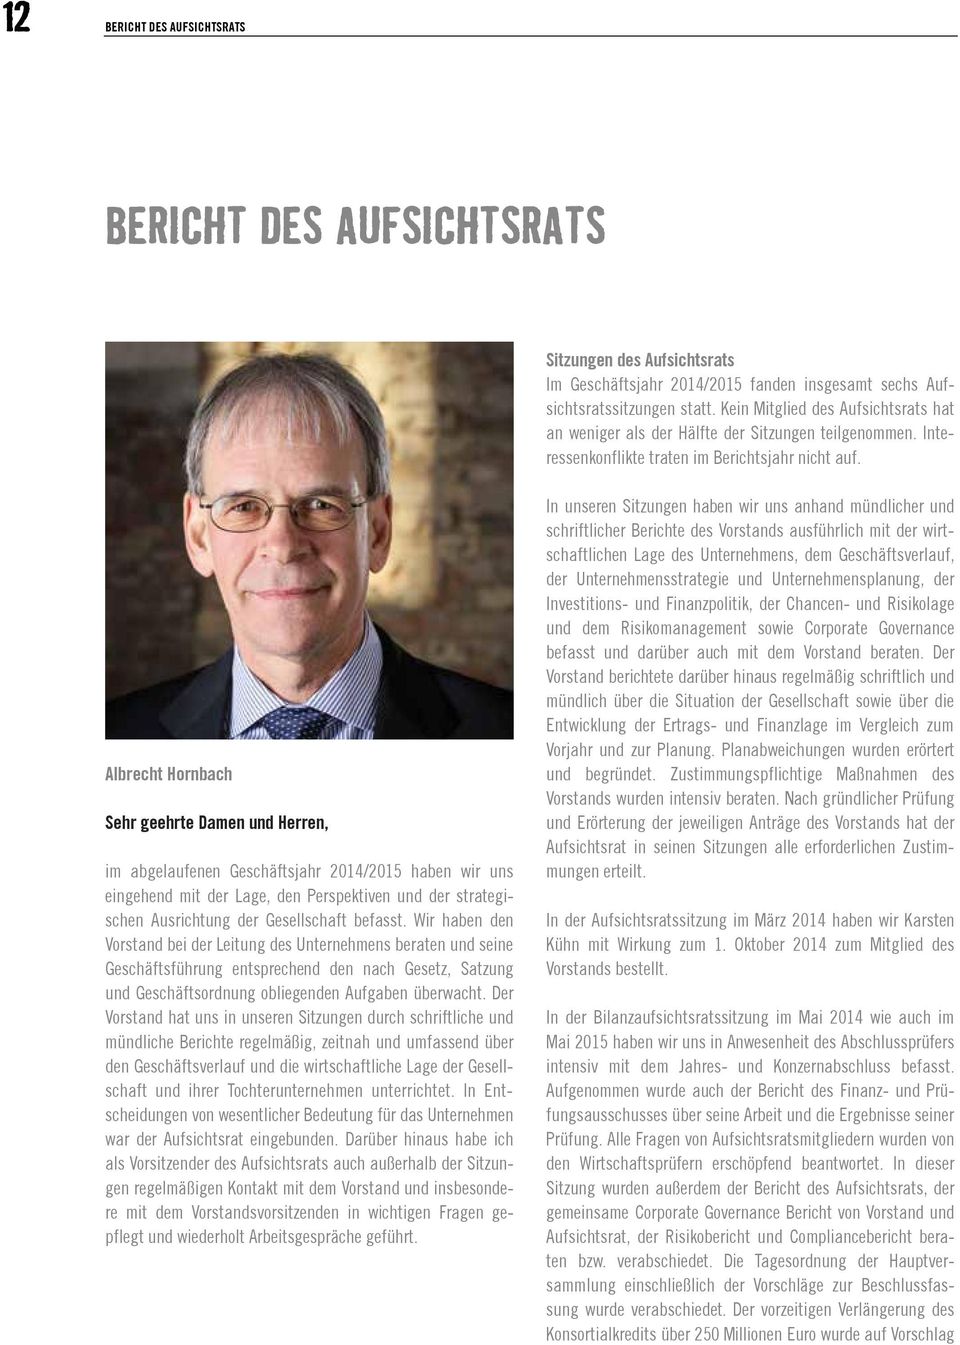 Albrecht Hornbach Sehr geehrte Damen und Herren, im abgelaufenen Geschäftsjahr 2014/2015 haben wir uns eingehend mit der Lage, den Perspektiven und der strategischen Ausrichtung der Gesellschaft